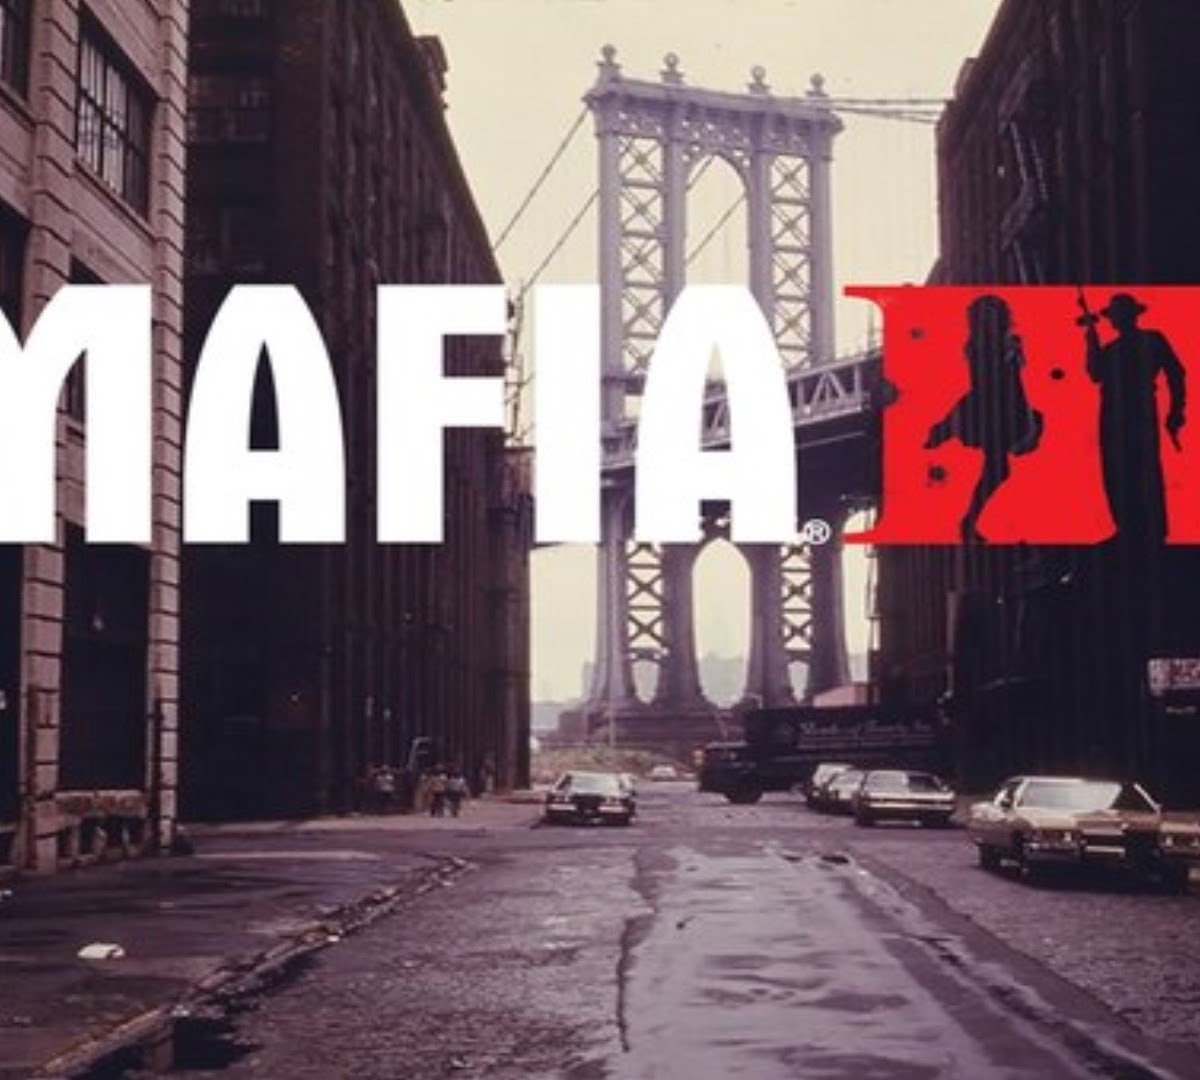 Requisitos para jogar Mafia 3 no PC são reveladas mostrando belo trabalho  de otimização 